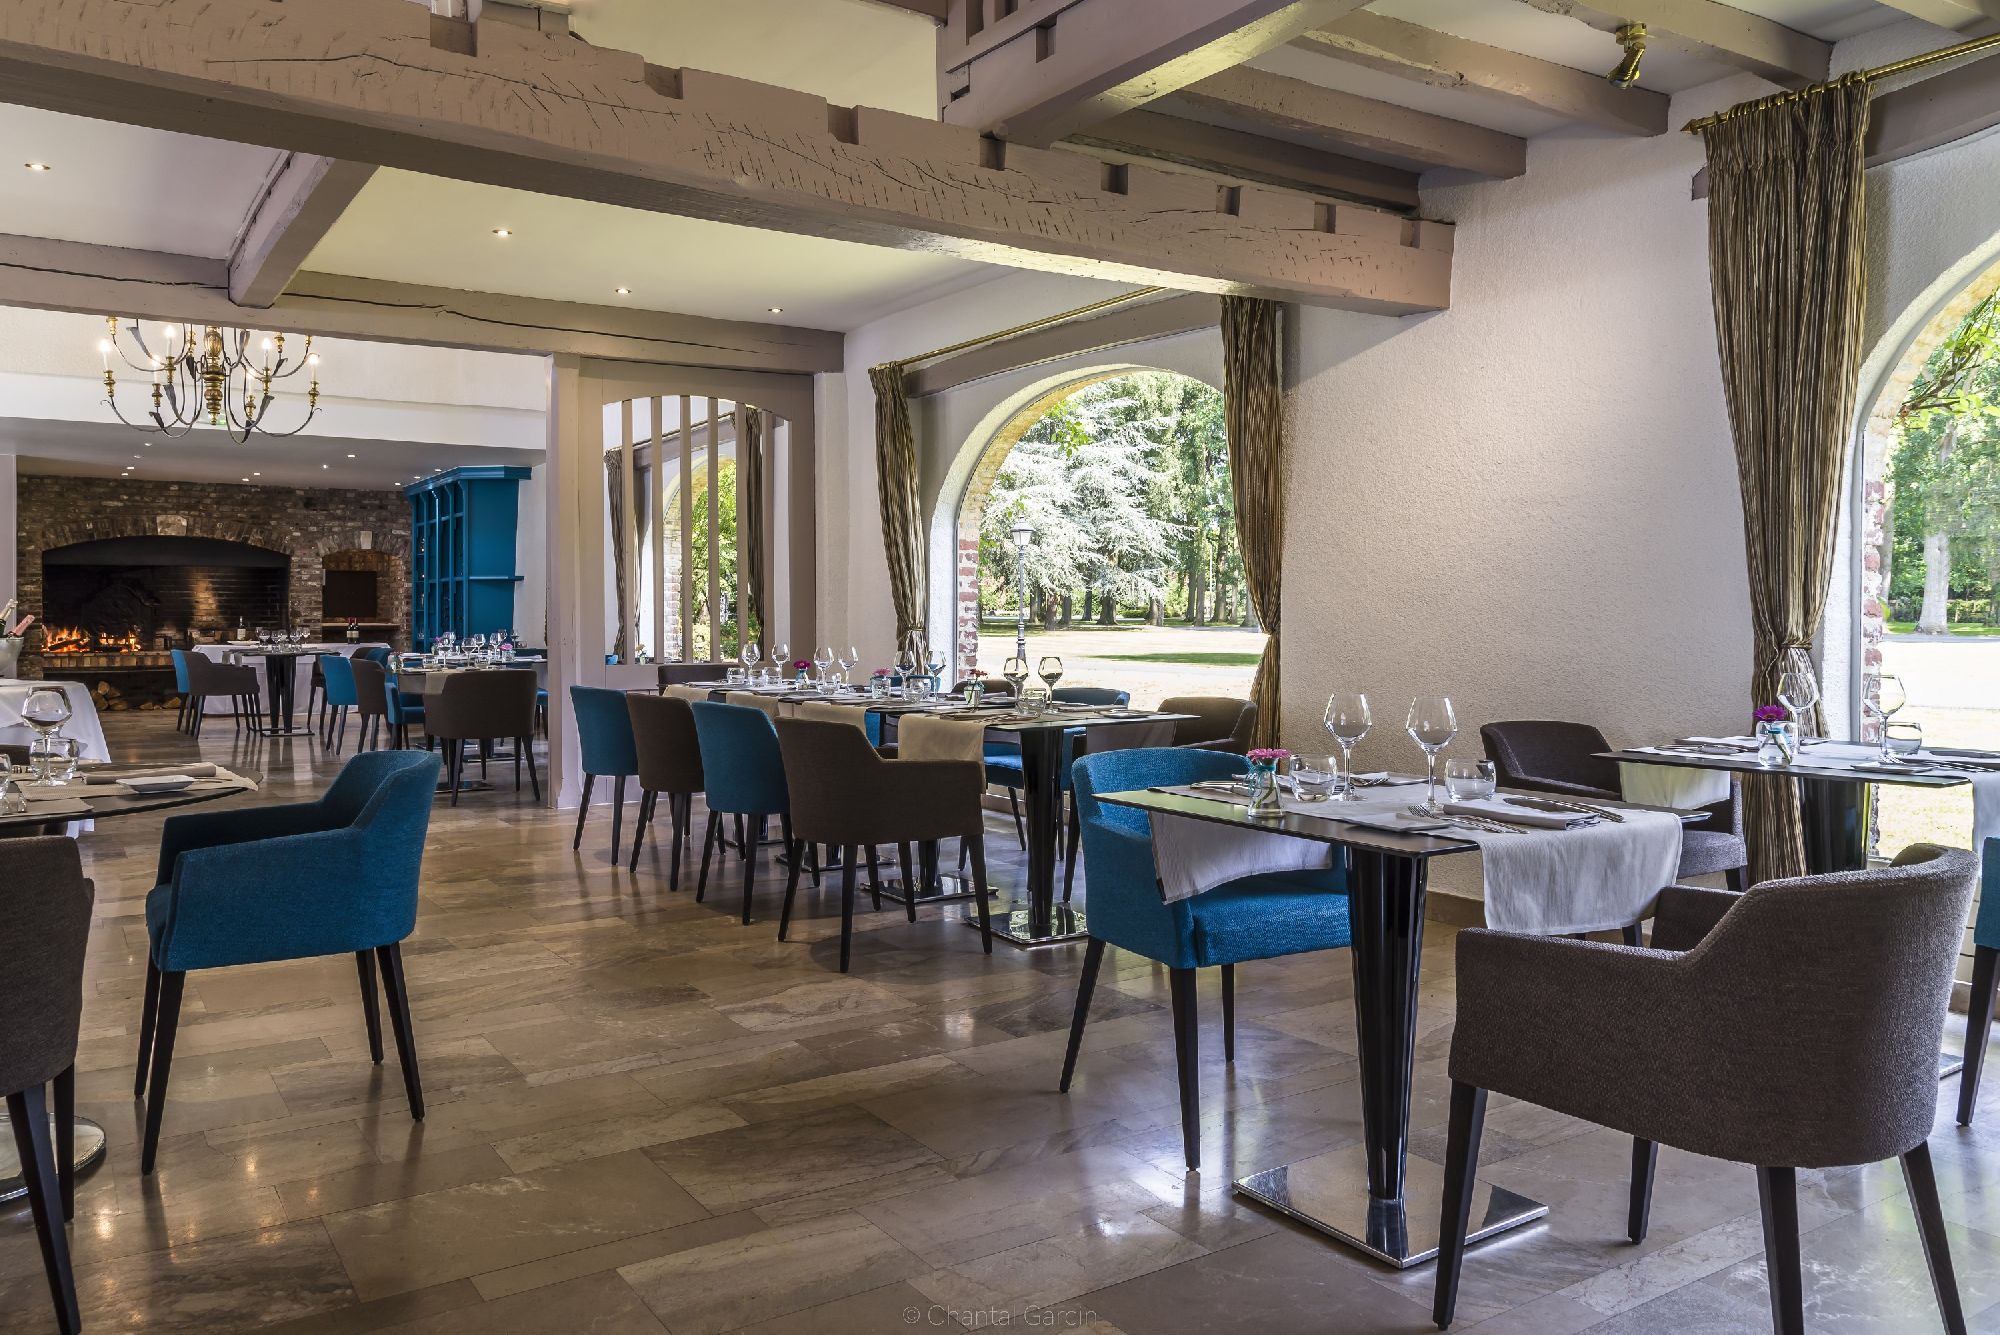 golf-expedition-golf-reizen-frankrijk-regio-pas-de-calais-chateau-tilques-restaurant-met-grote-openhaard.jpg